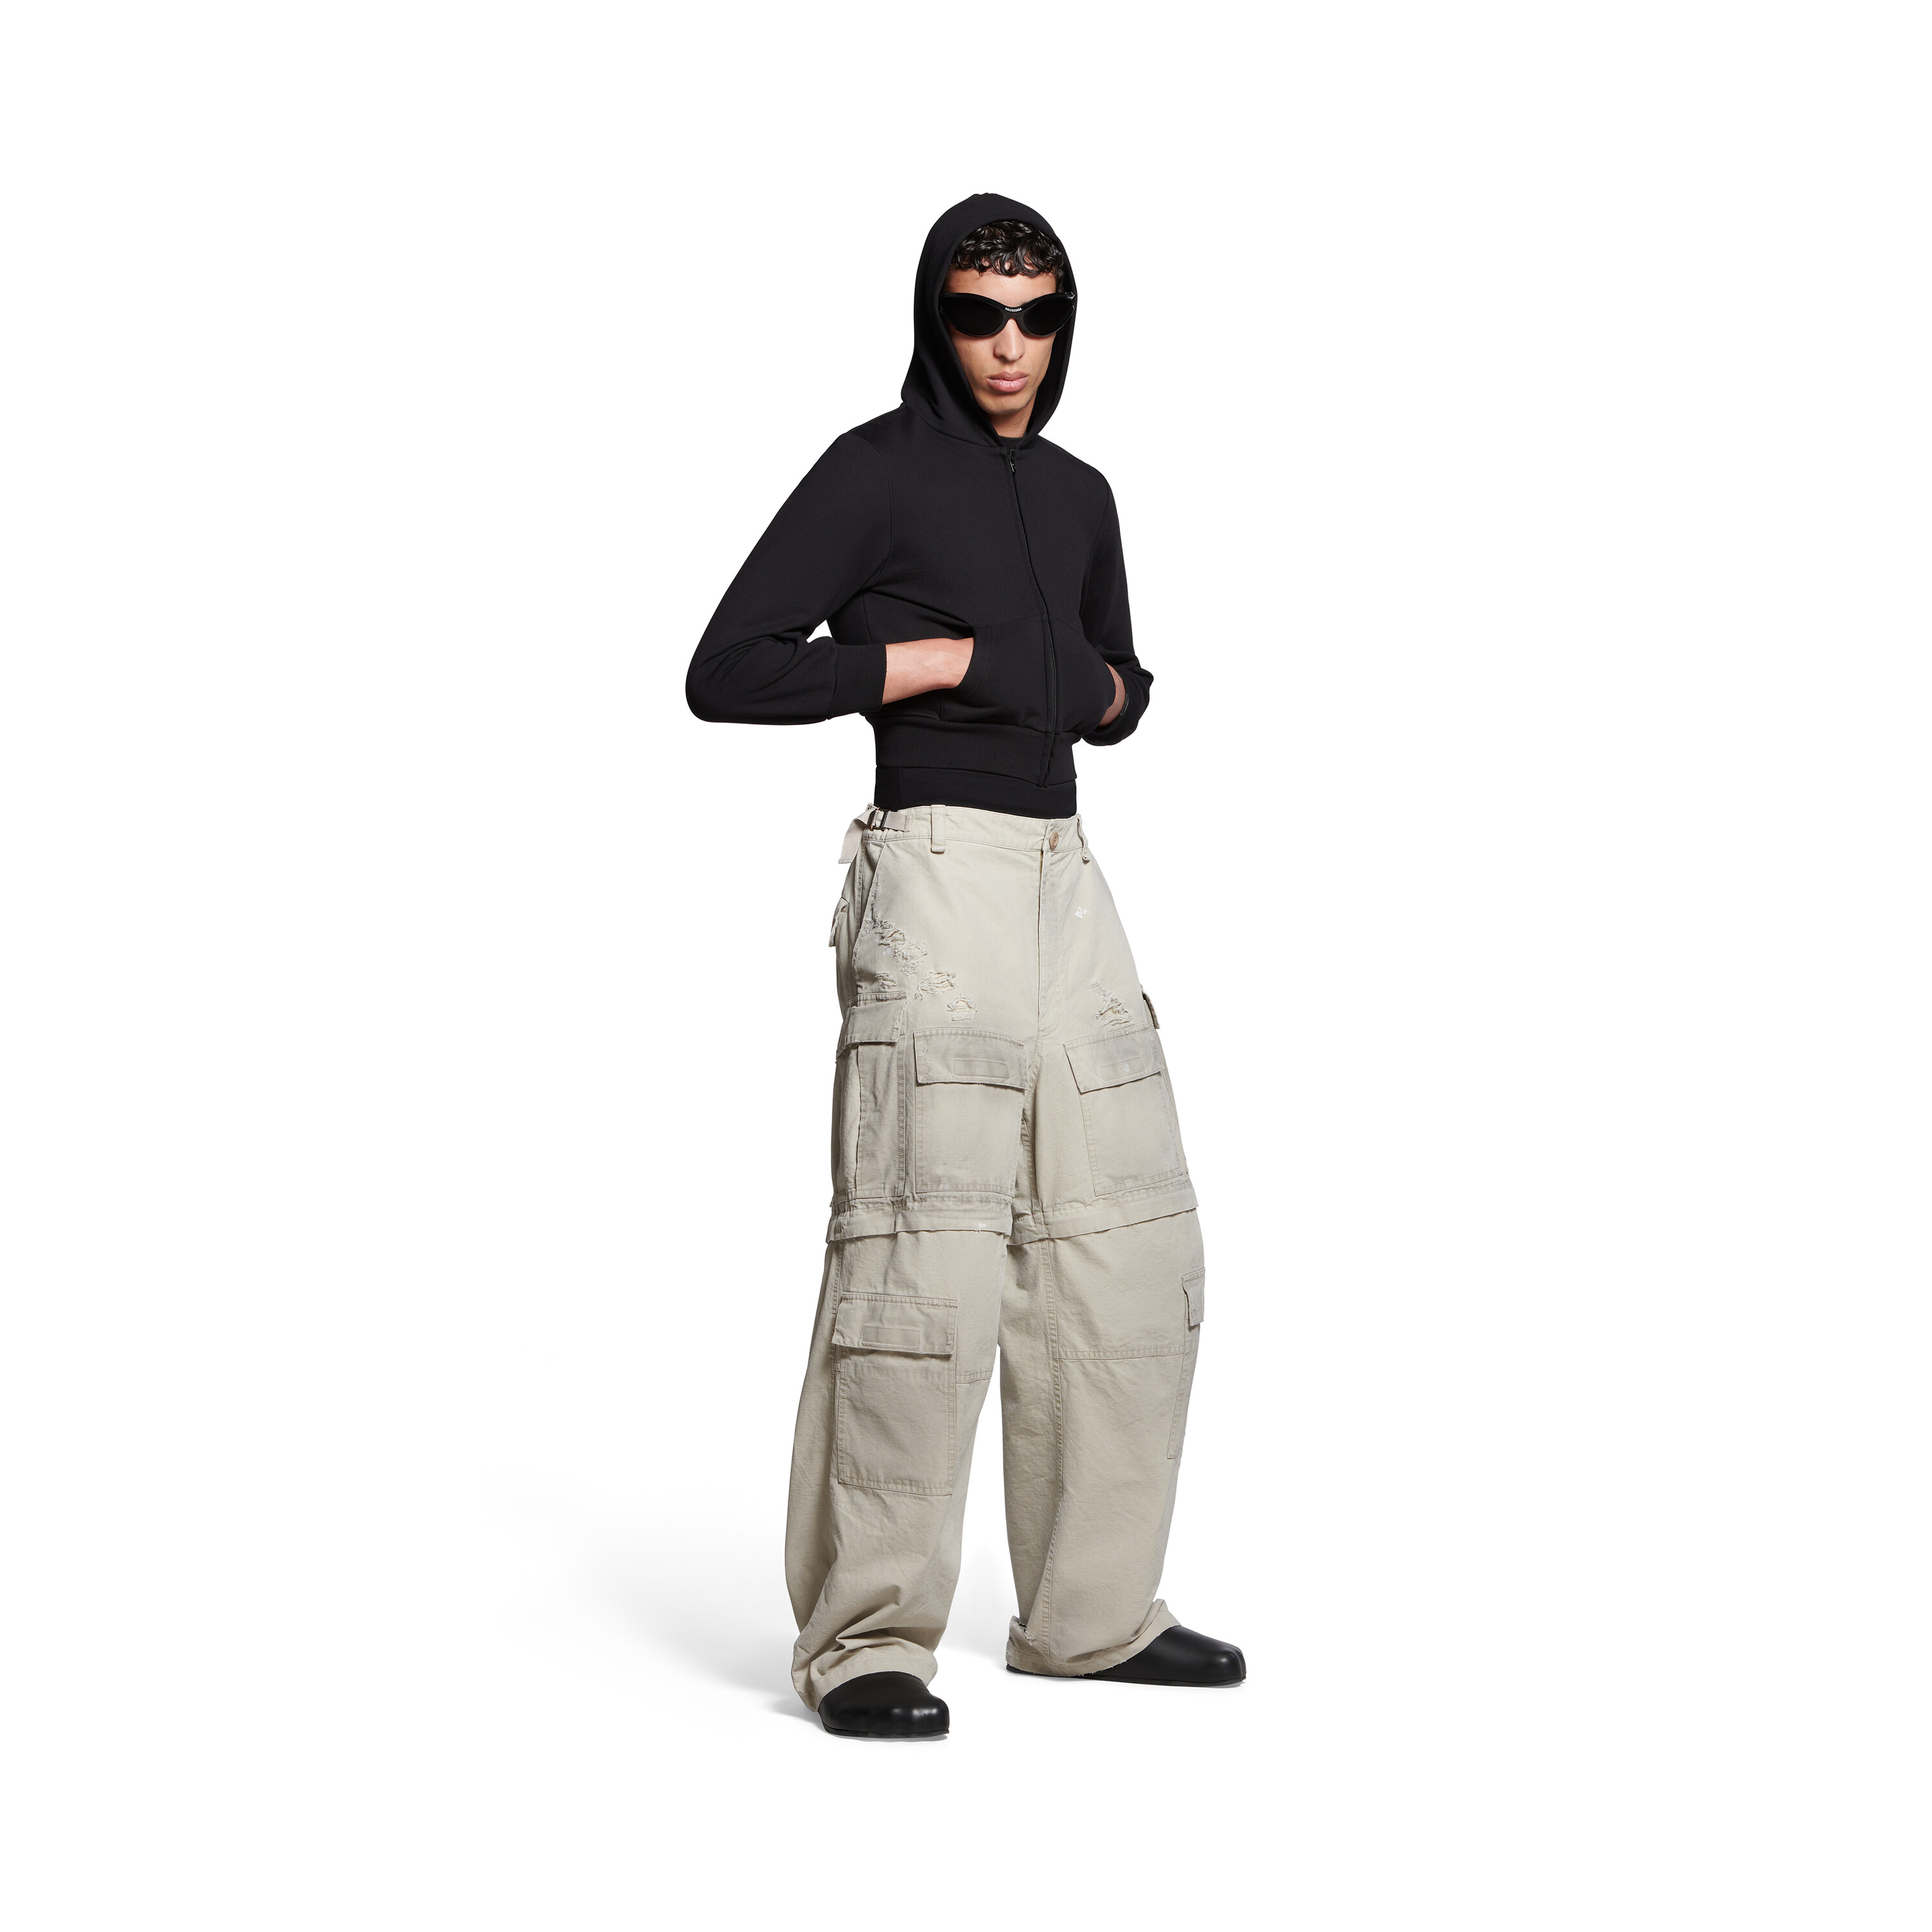 Waxx Pantalon Cargo Homme Beige - Vêtements Pantalons cargo Homme